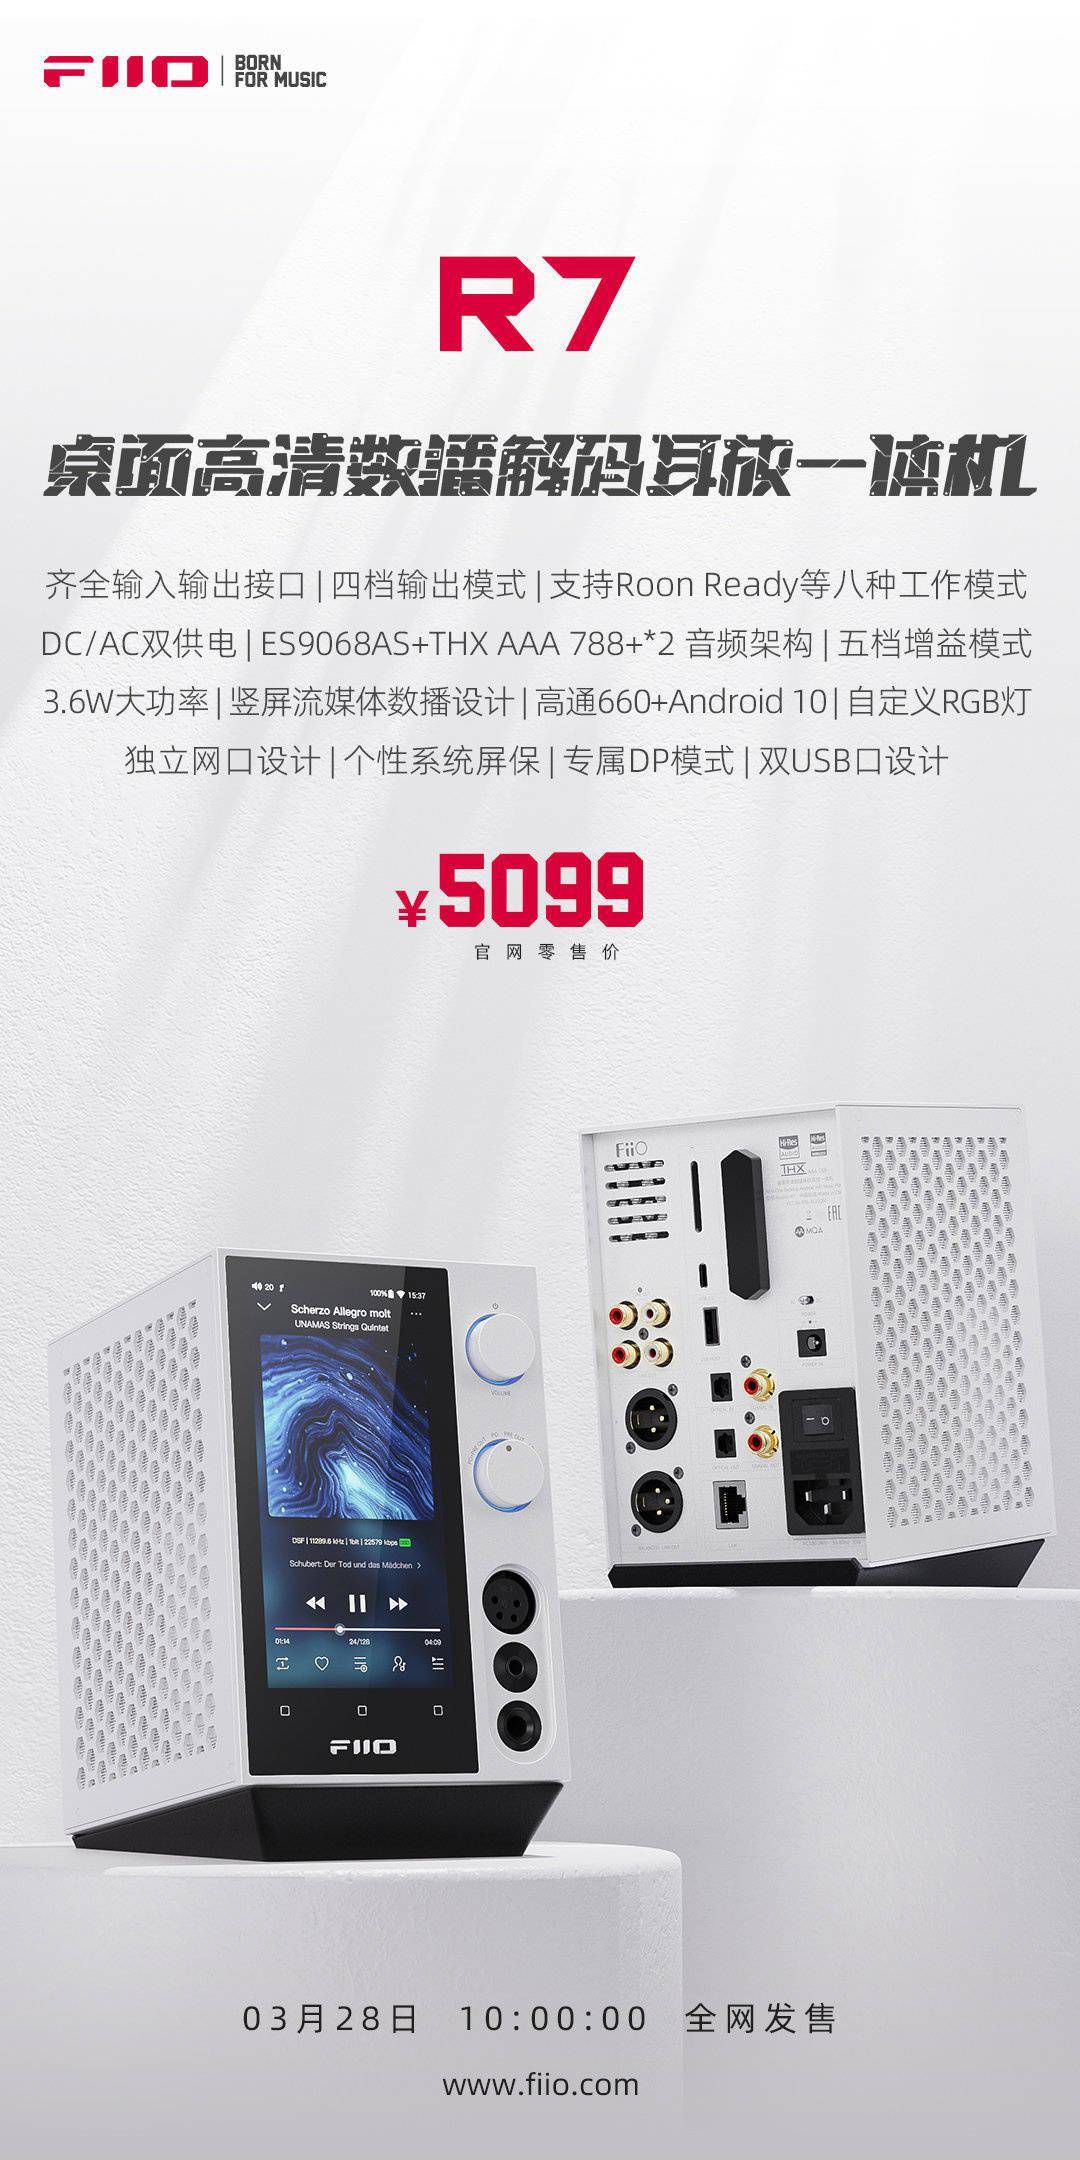 飞傲R7桌面解码耳放一体机白色款今日发布 无任何配置、功能上差异